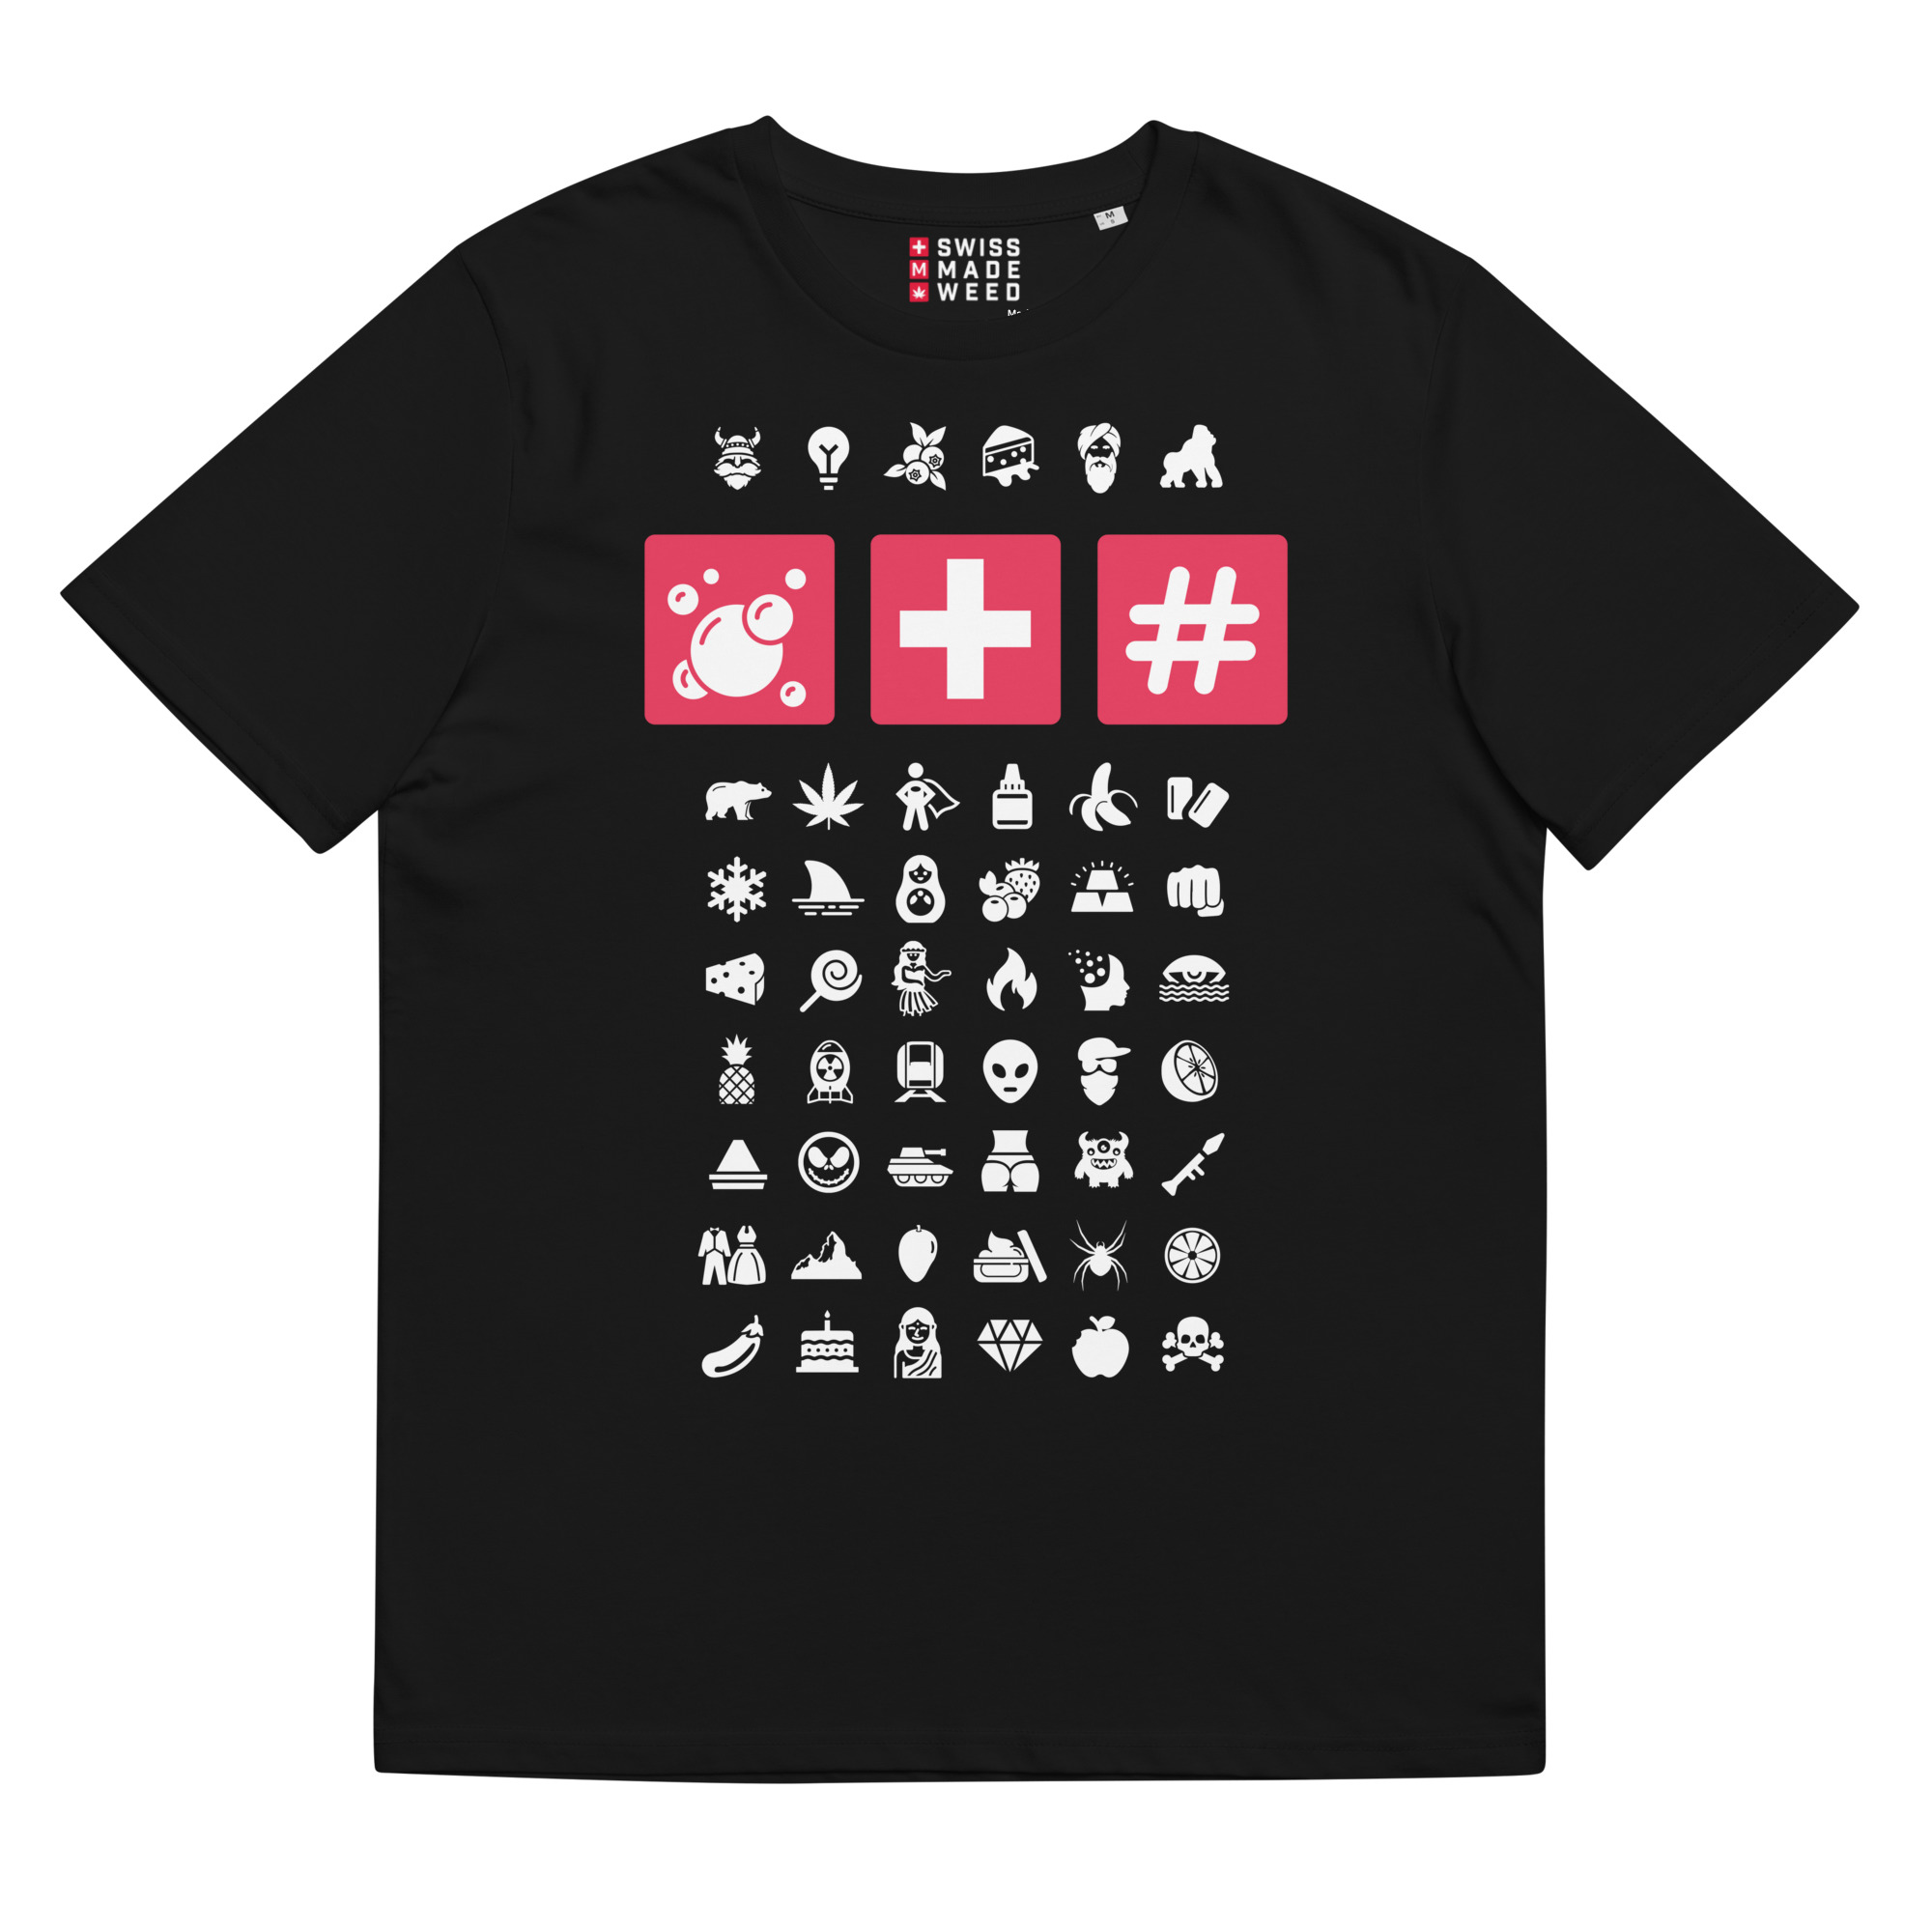 T-shirt – SMW – Bubble Hash T-Shirts Wearyt